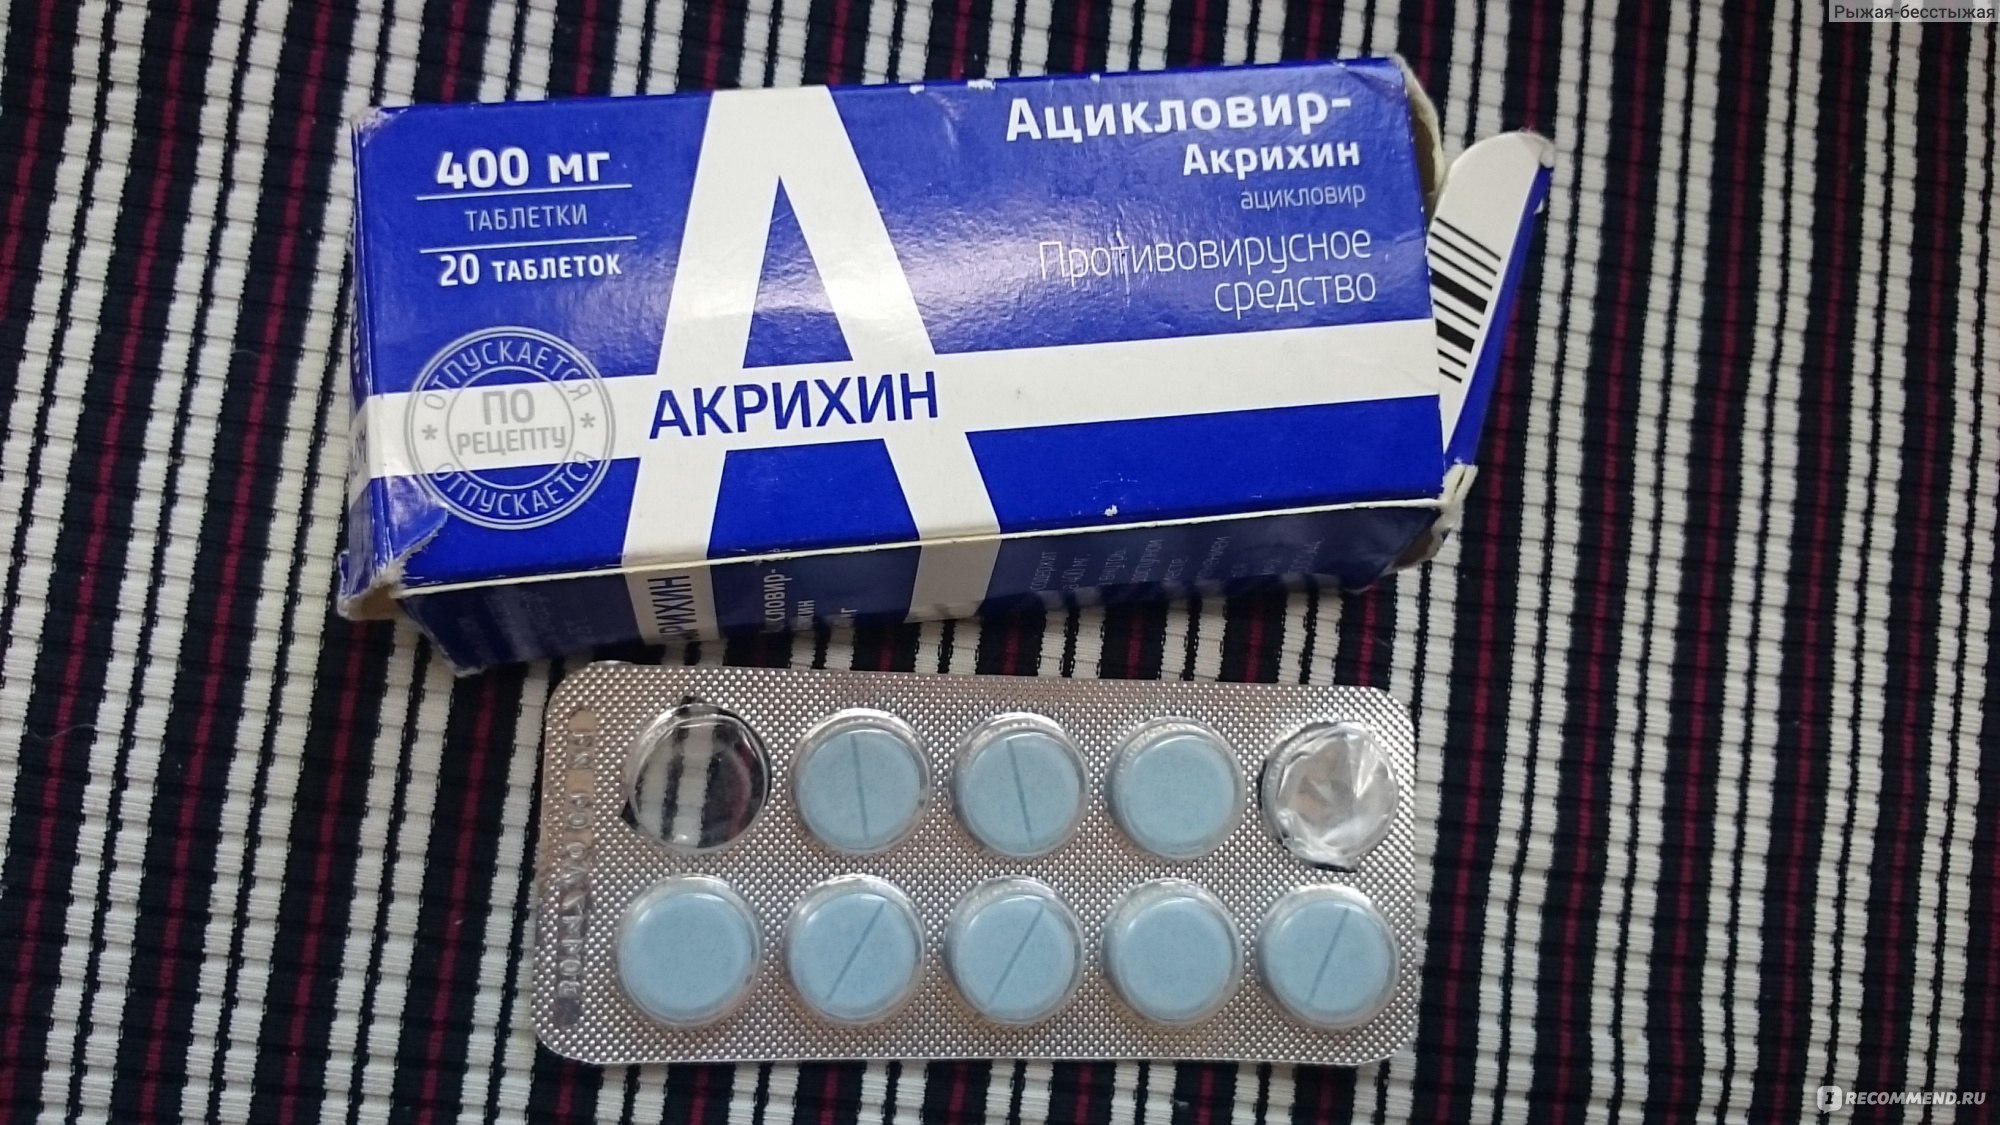 Противовирусные средства Ацикловир-Акри Акрихин в таблетках .